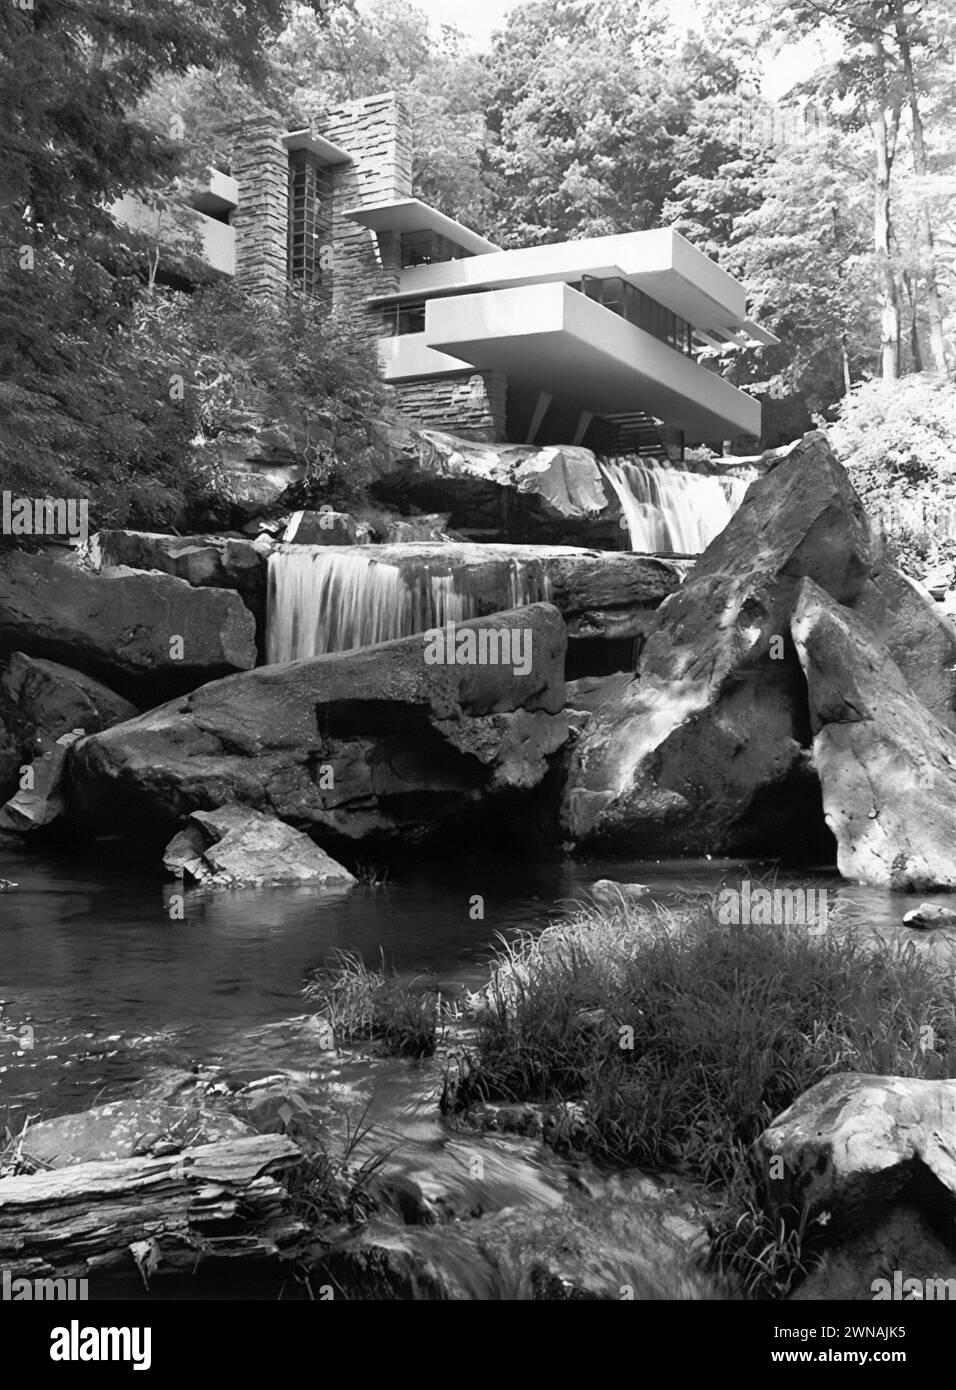 Fallingwater, ein organisches Architekturhaus, das in den 1930er Jahren von dem Architekten Frank Lloyd Wright entworfen wurde, wurde teilweise über einem Wasserfall am Bear Run River im Mill Run Teil der Stewart Township, Pennsylvania, errichtet. (USA) Stockfoto